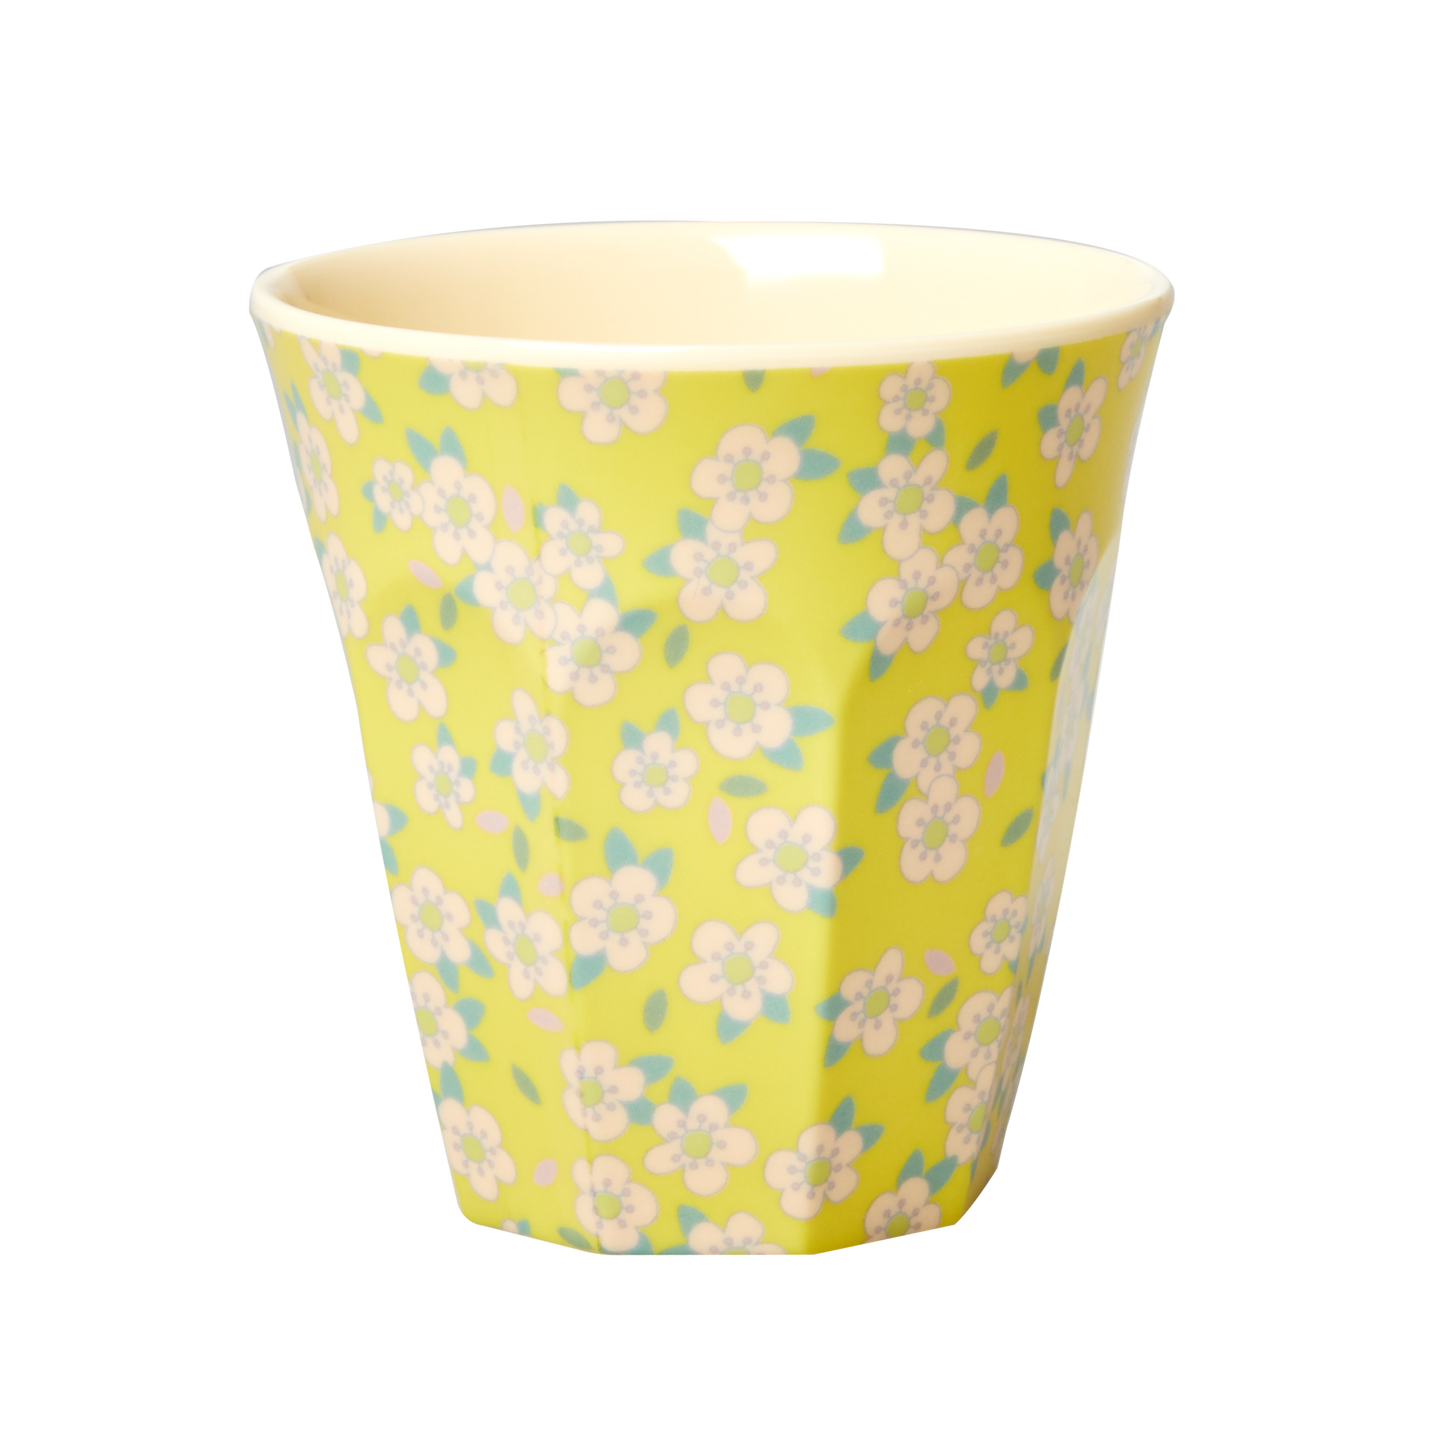 כוס מלמין טוטון בהדפס פרחים פסטל